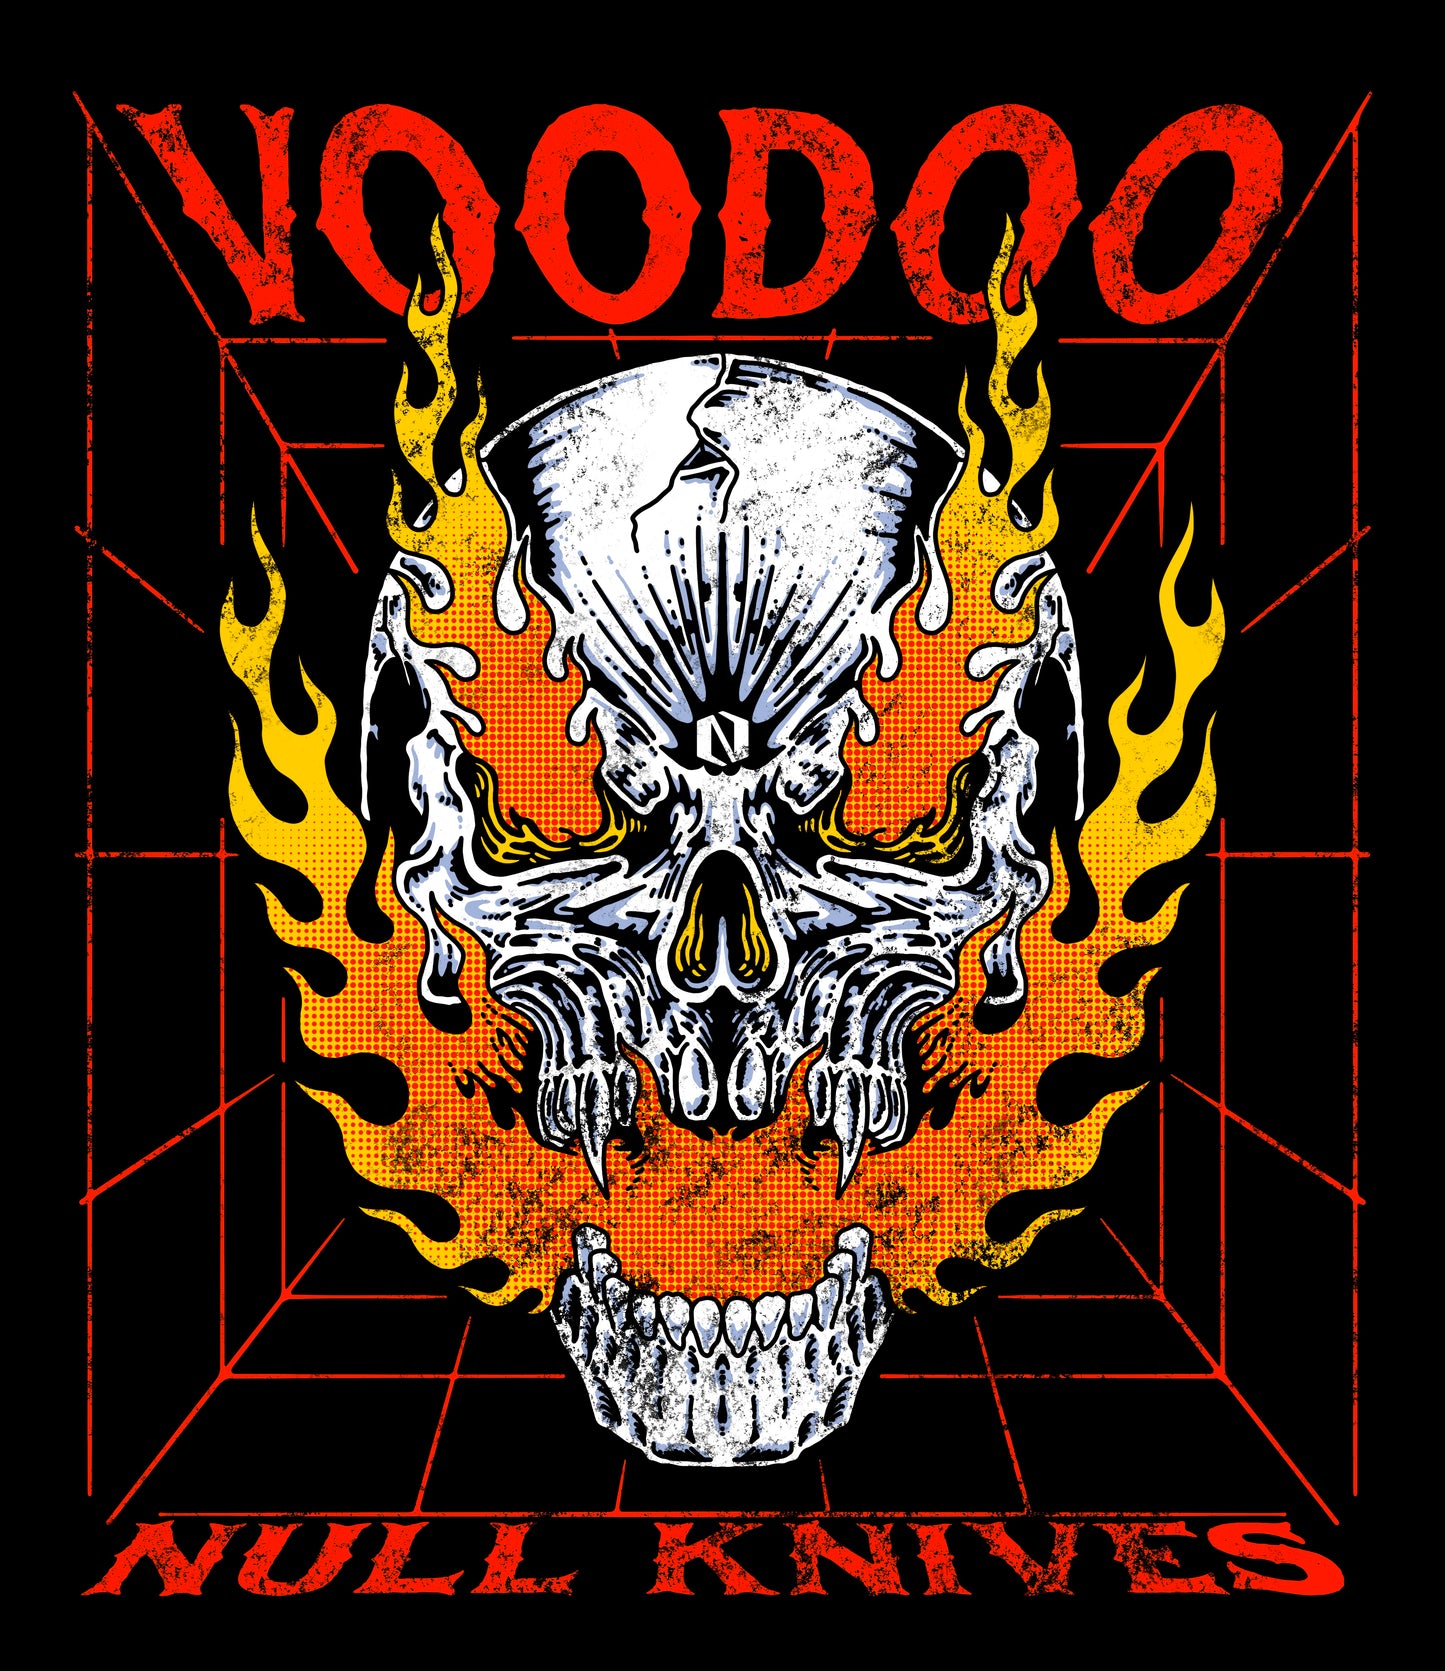 Voodoo Flames T-shirt